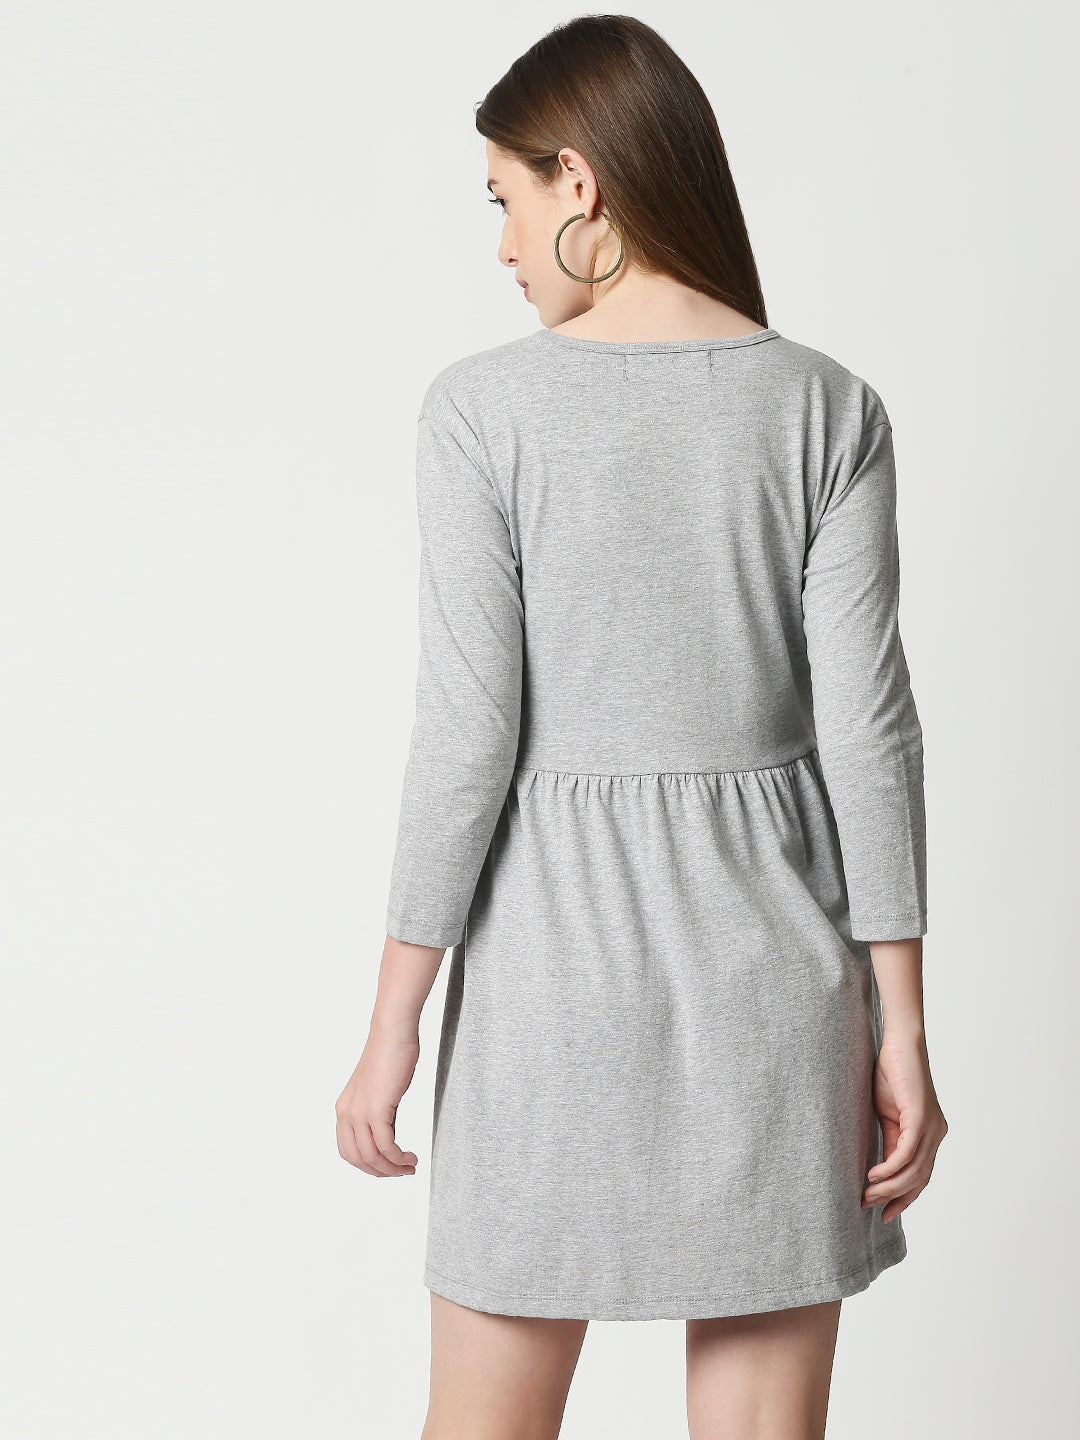 Buy BLAMBLACK Women Round neck Dresses Grey Melange Color Printed 3\4 length Sleeves